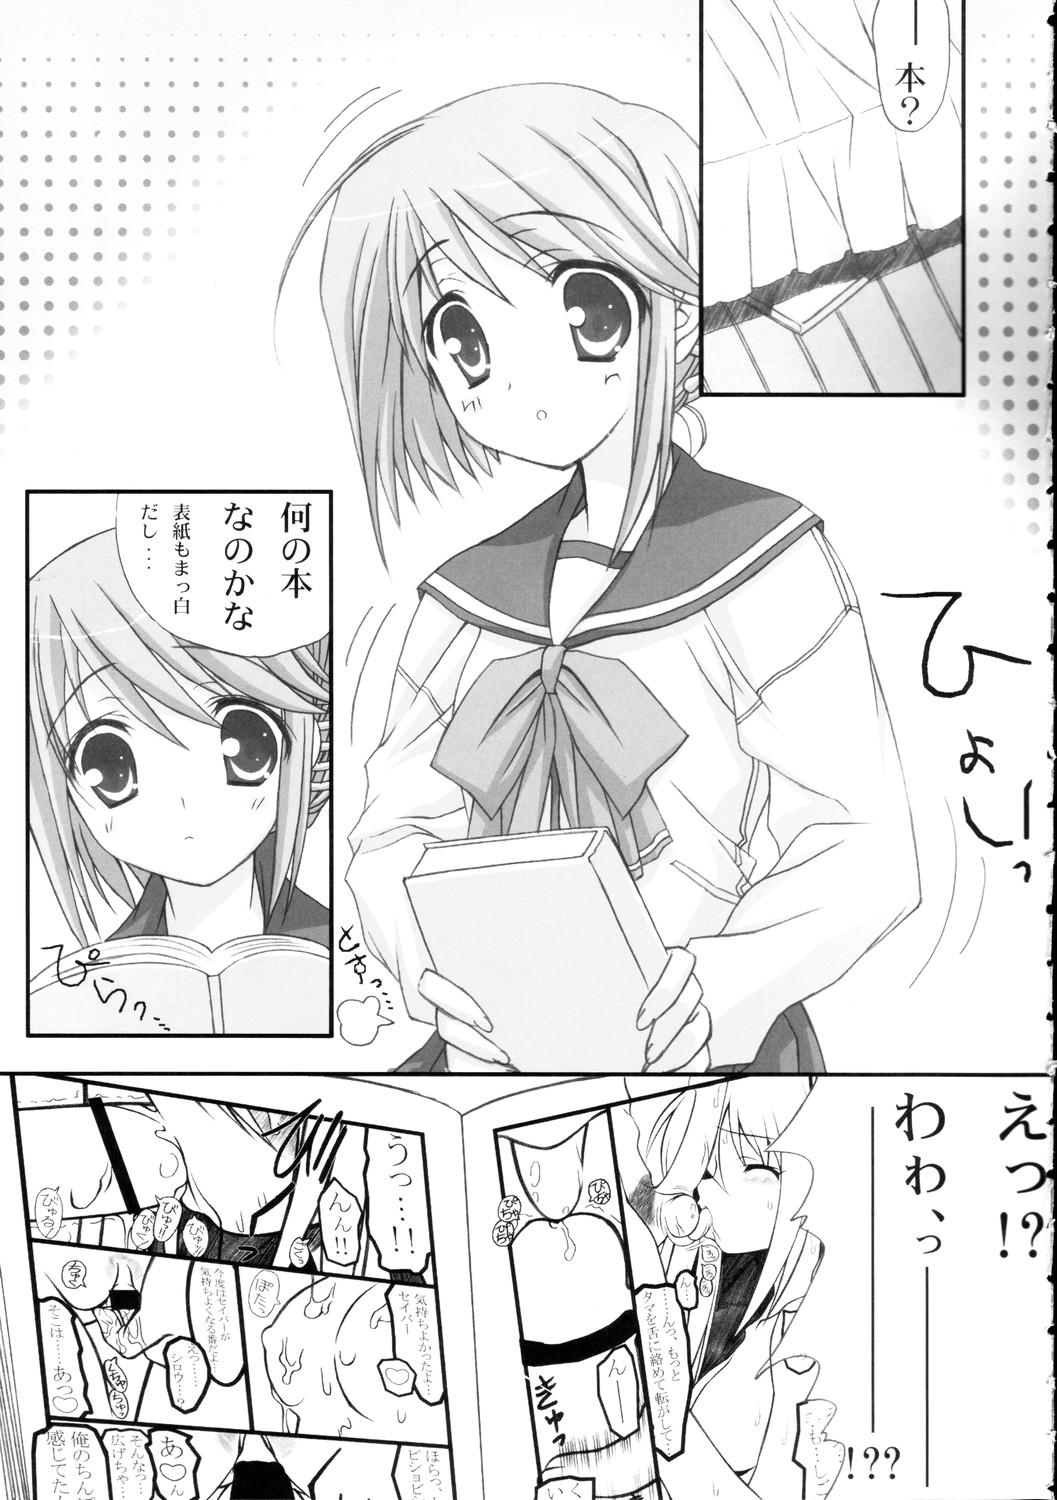 Asshole Himitsu no Hako - Toheart2 Follando - Page 6